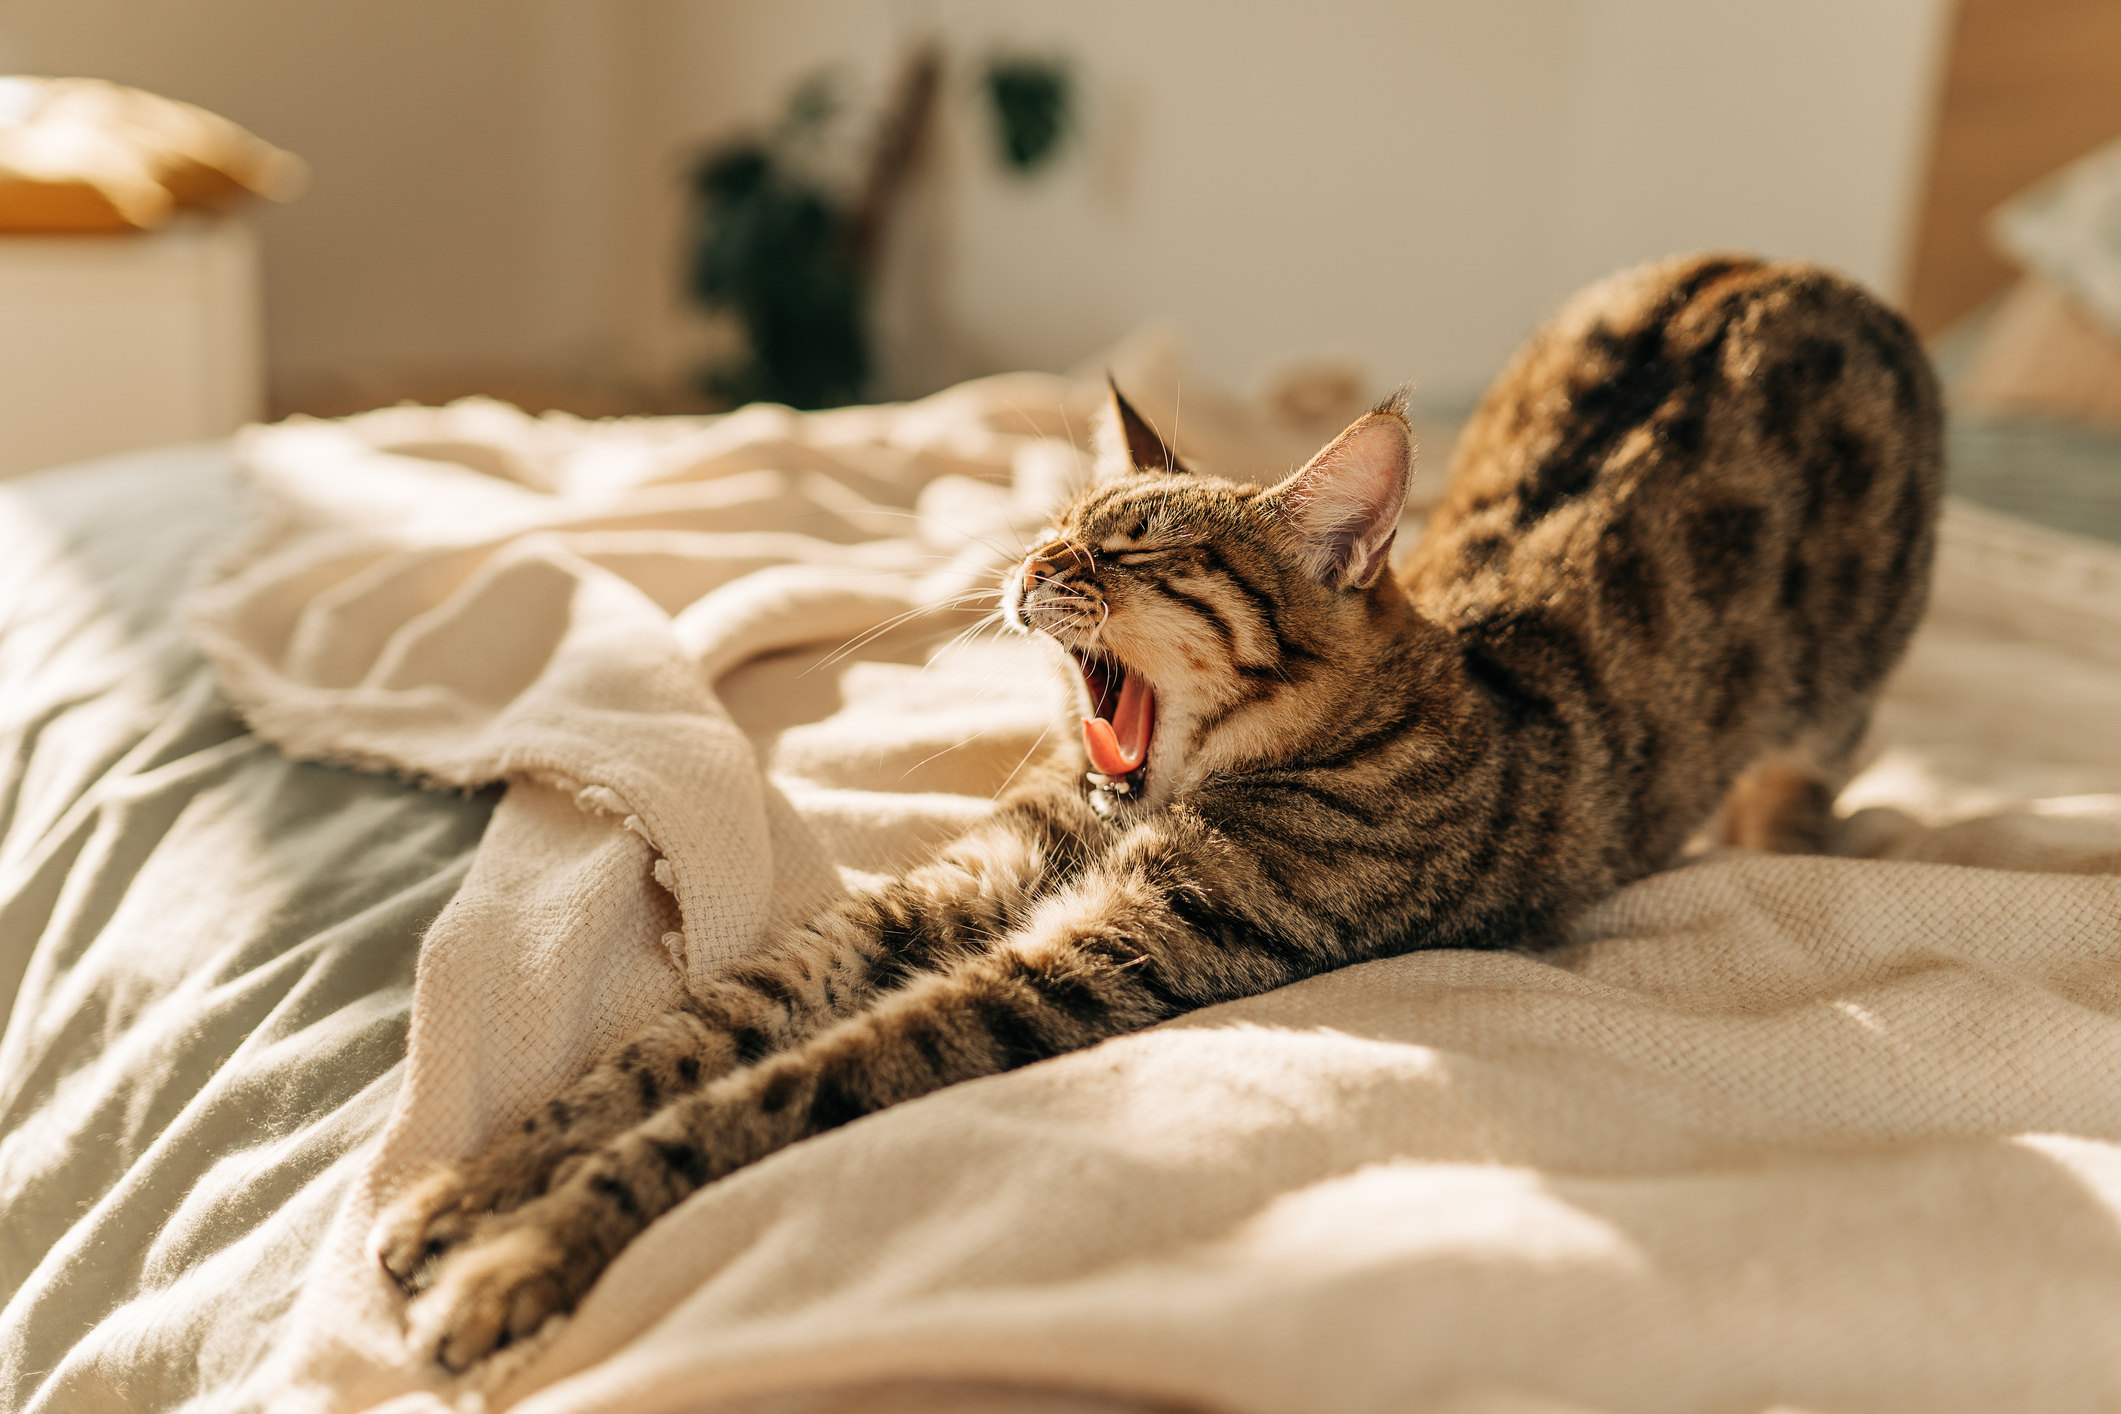 К чему снятся кошки: толкование снов про кошек, кошка к чему приснилась?